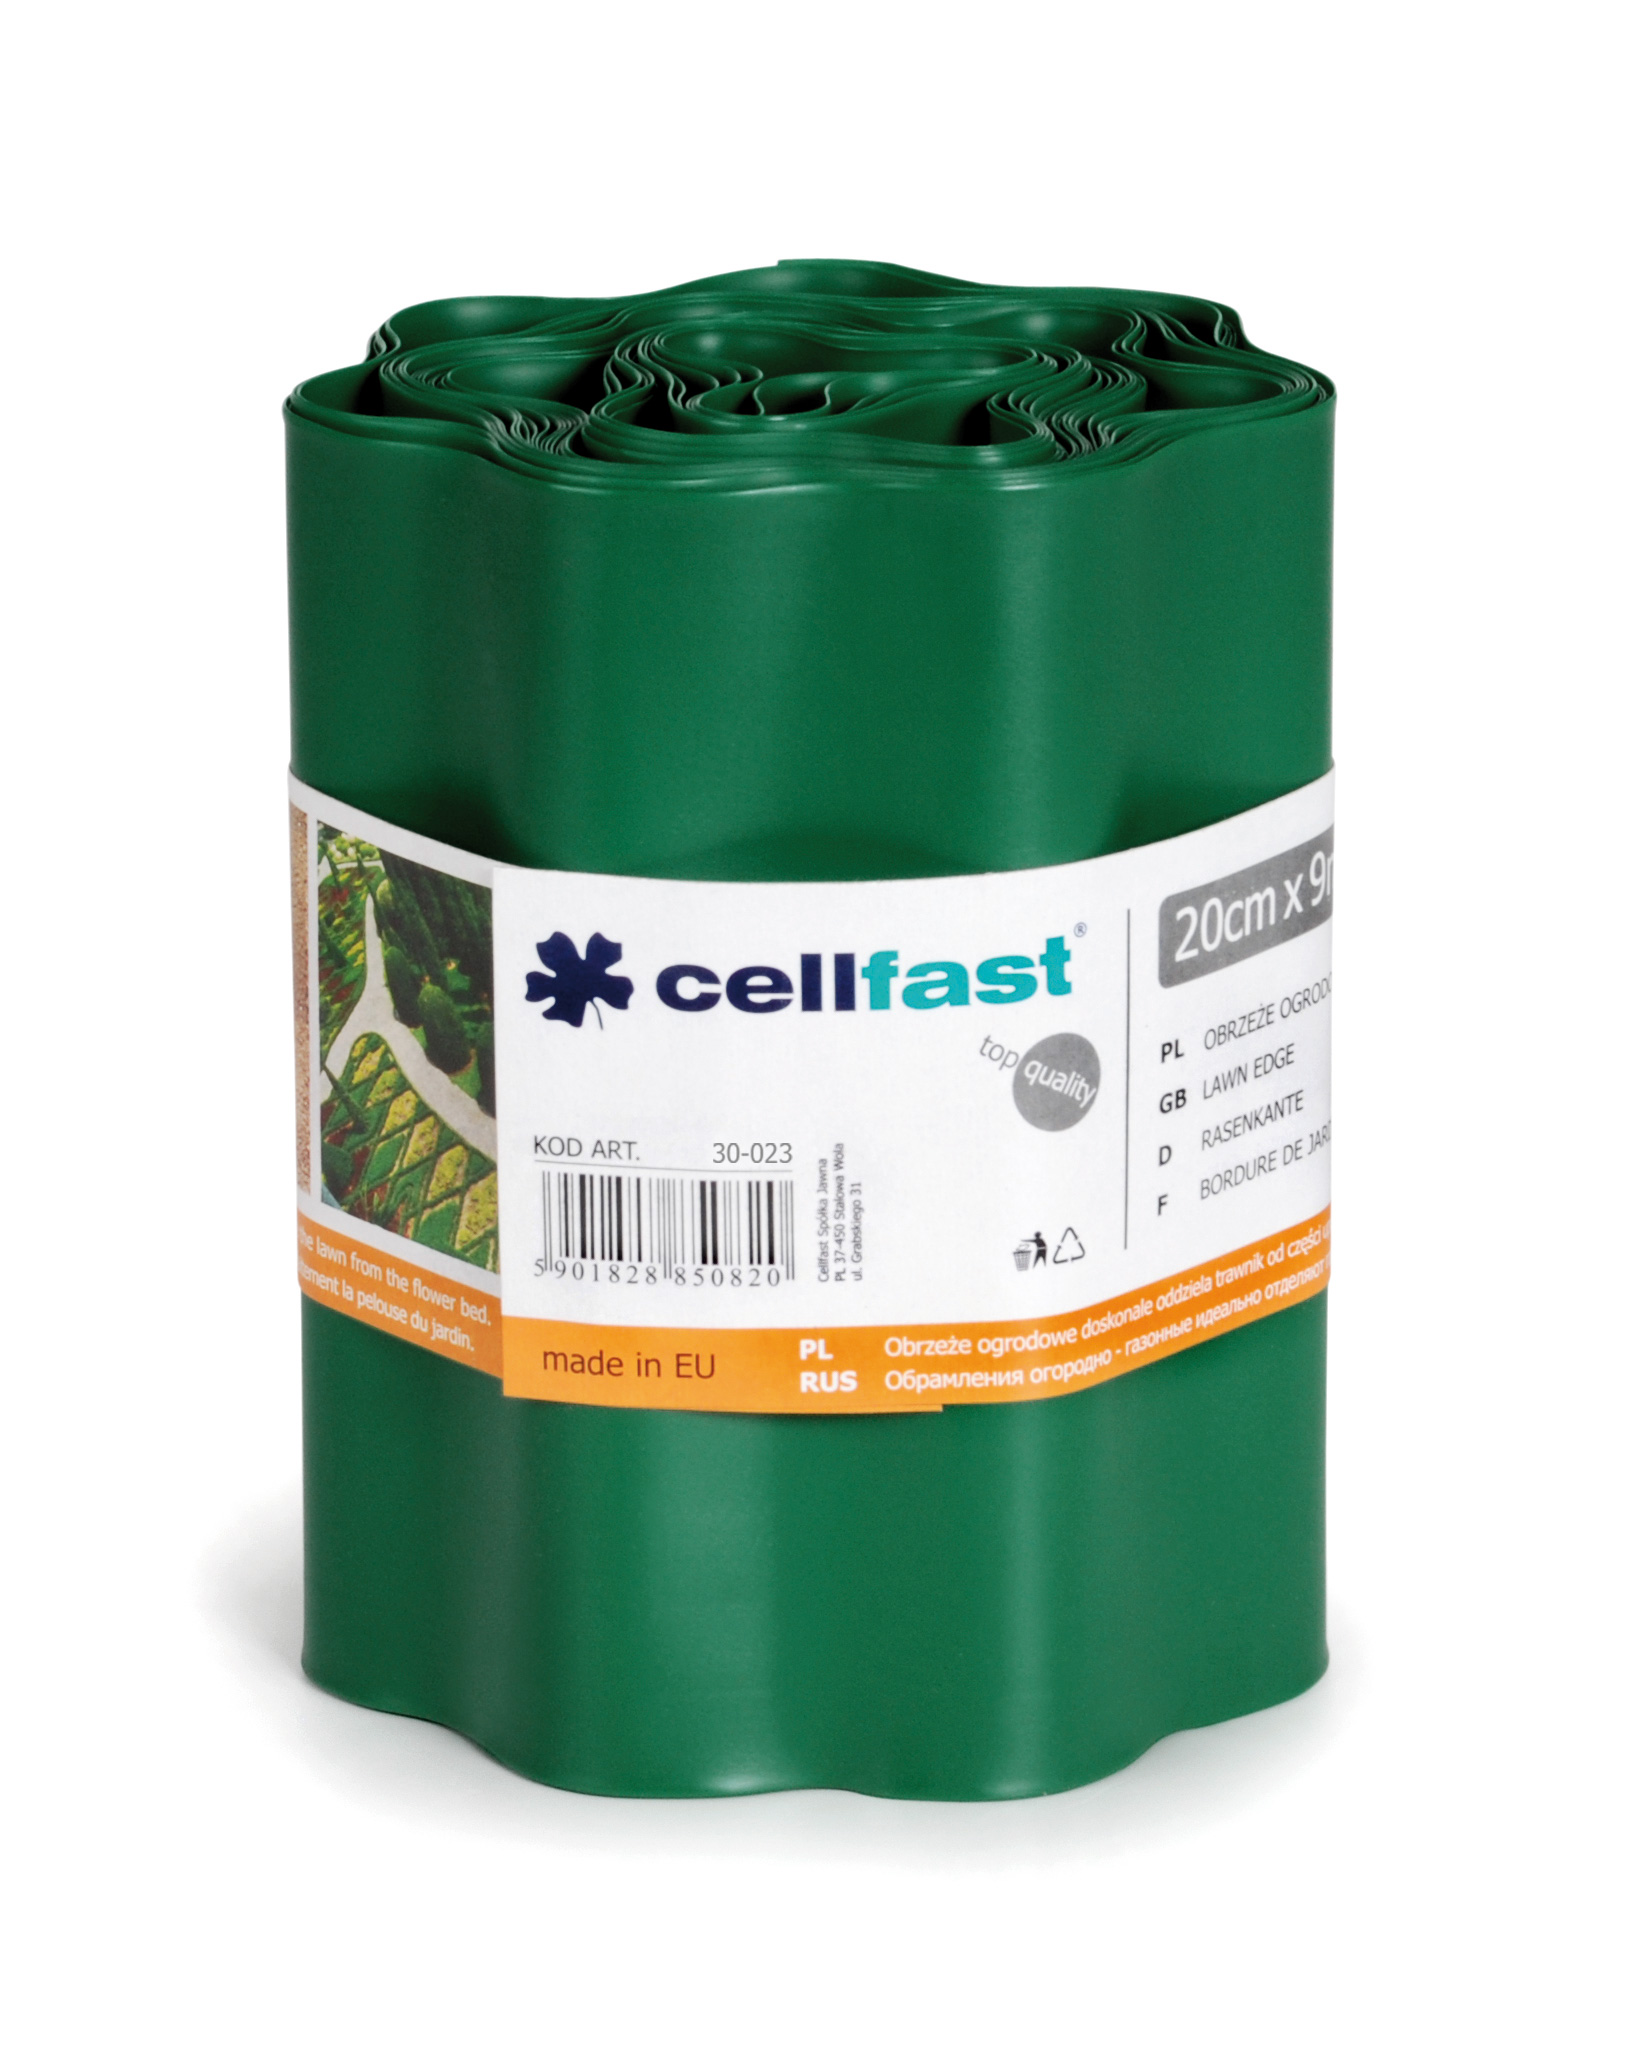 Cellfast Obrzeze ogrodowe ciemna zielen 20cm x 9m (30-023) 989988 (5901828850851)